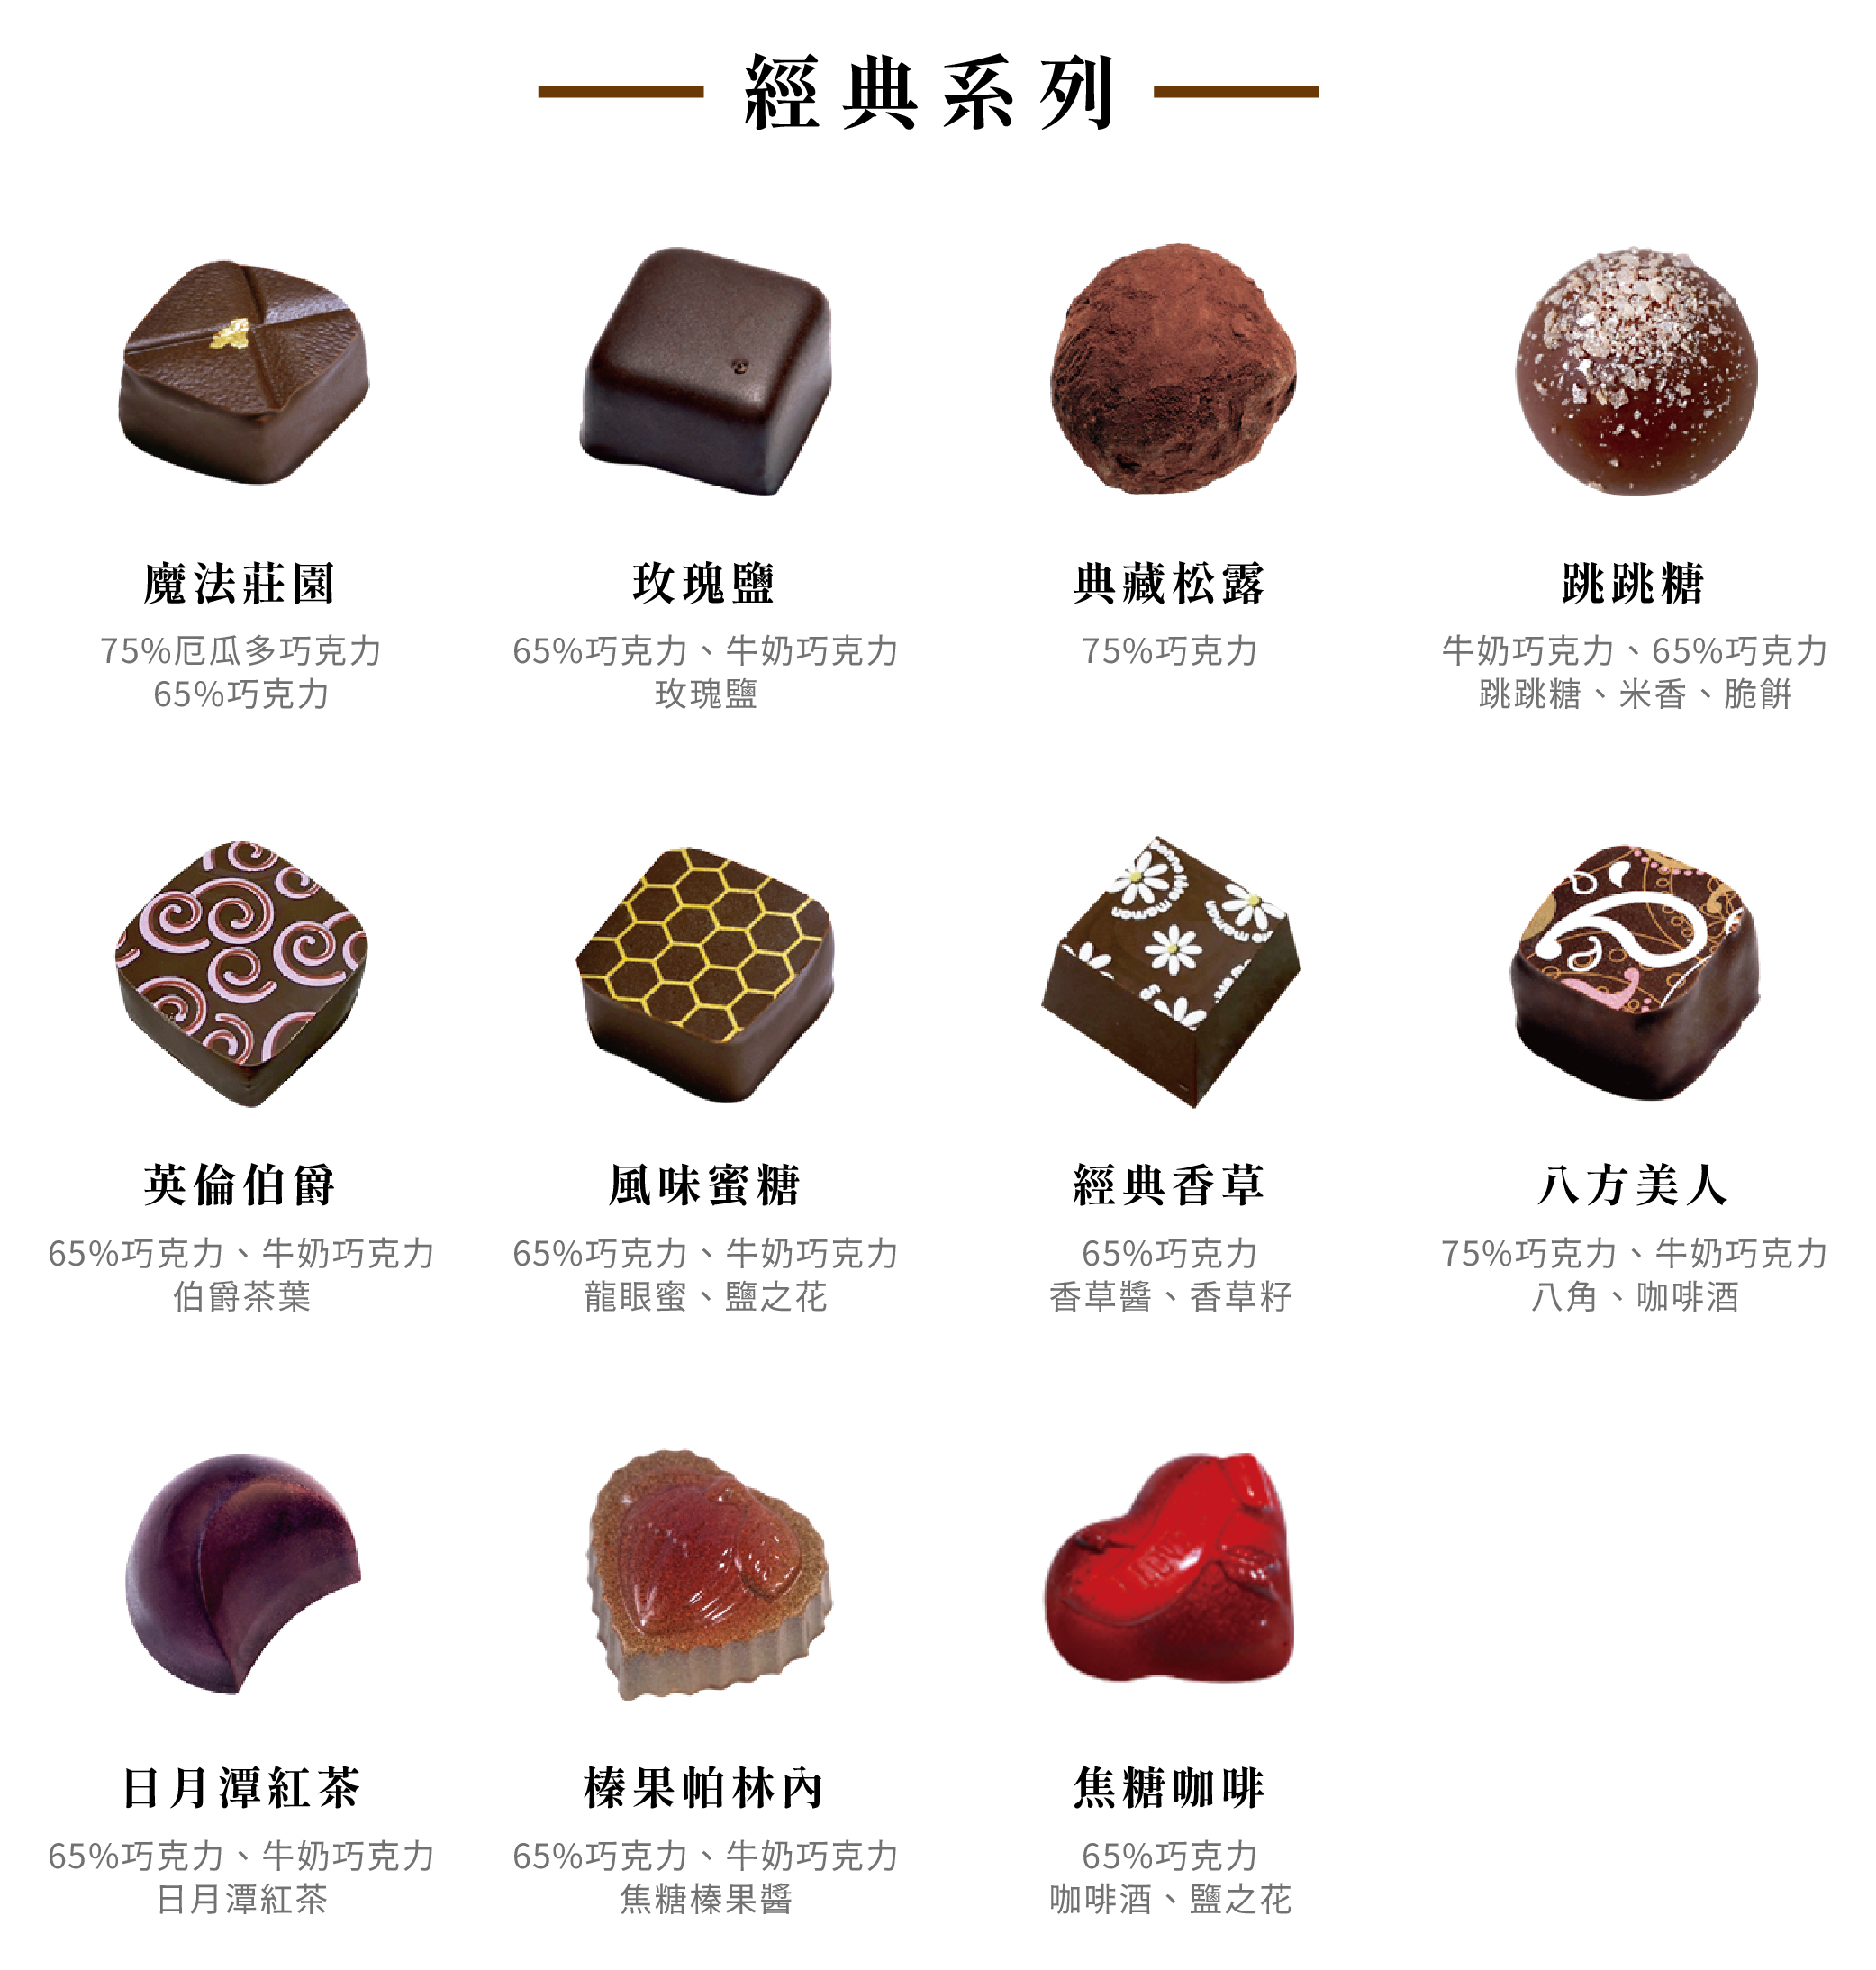 【巧克力雲莊】海洋微風禮盒(9入/盒) 限量純手工含餡巧克力 情人節巧克力